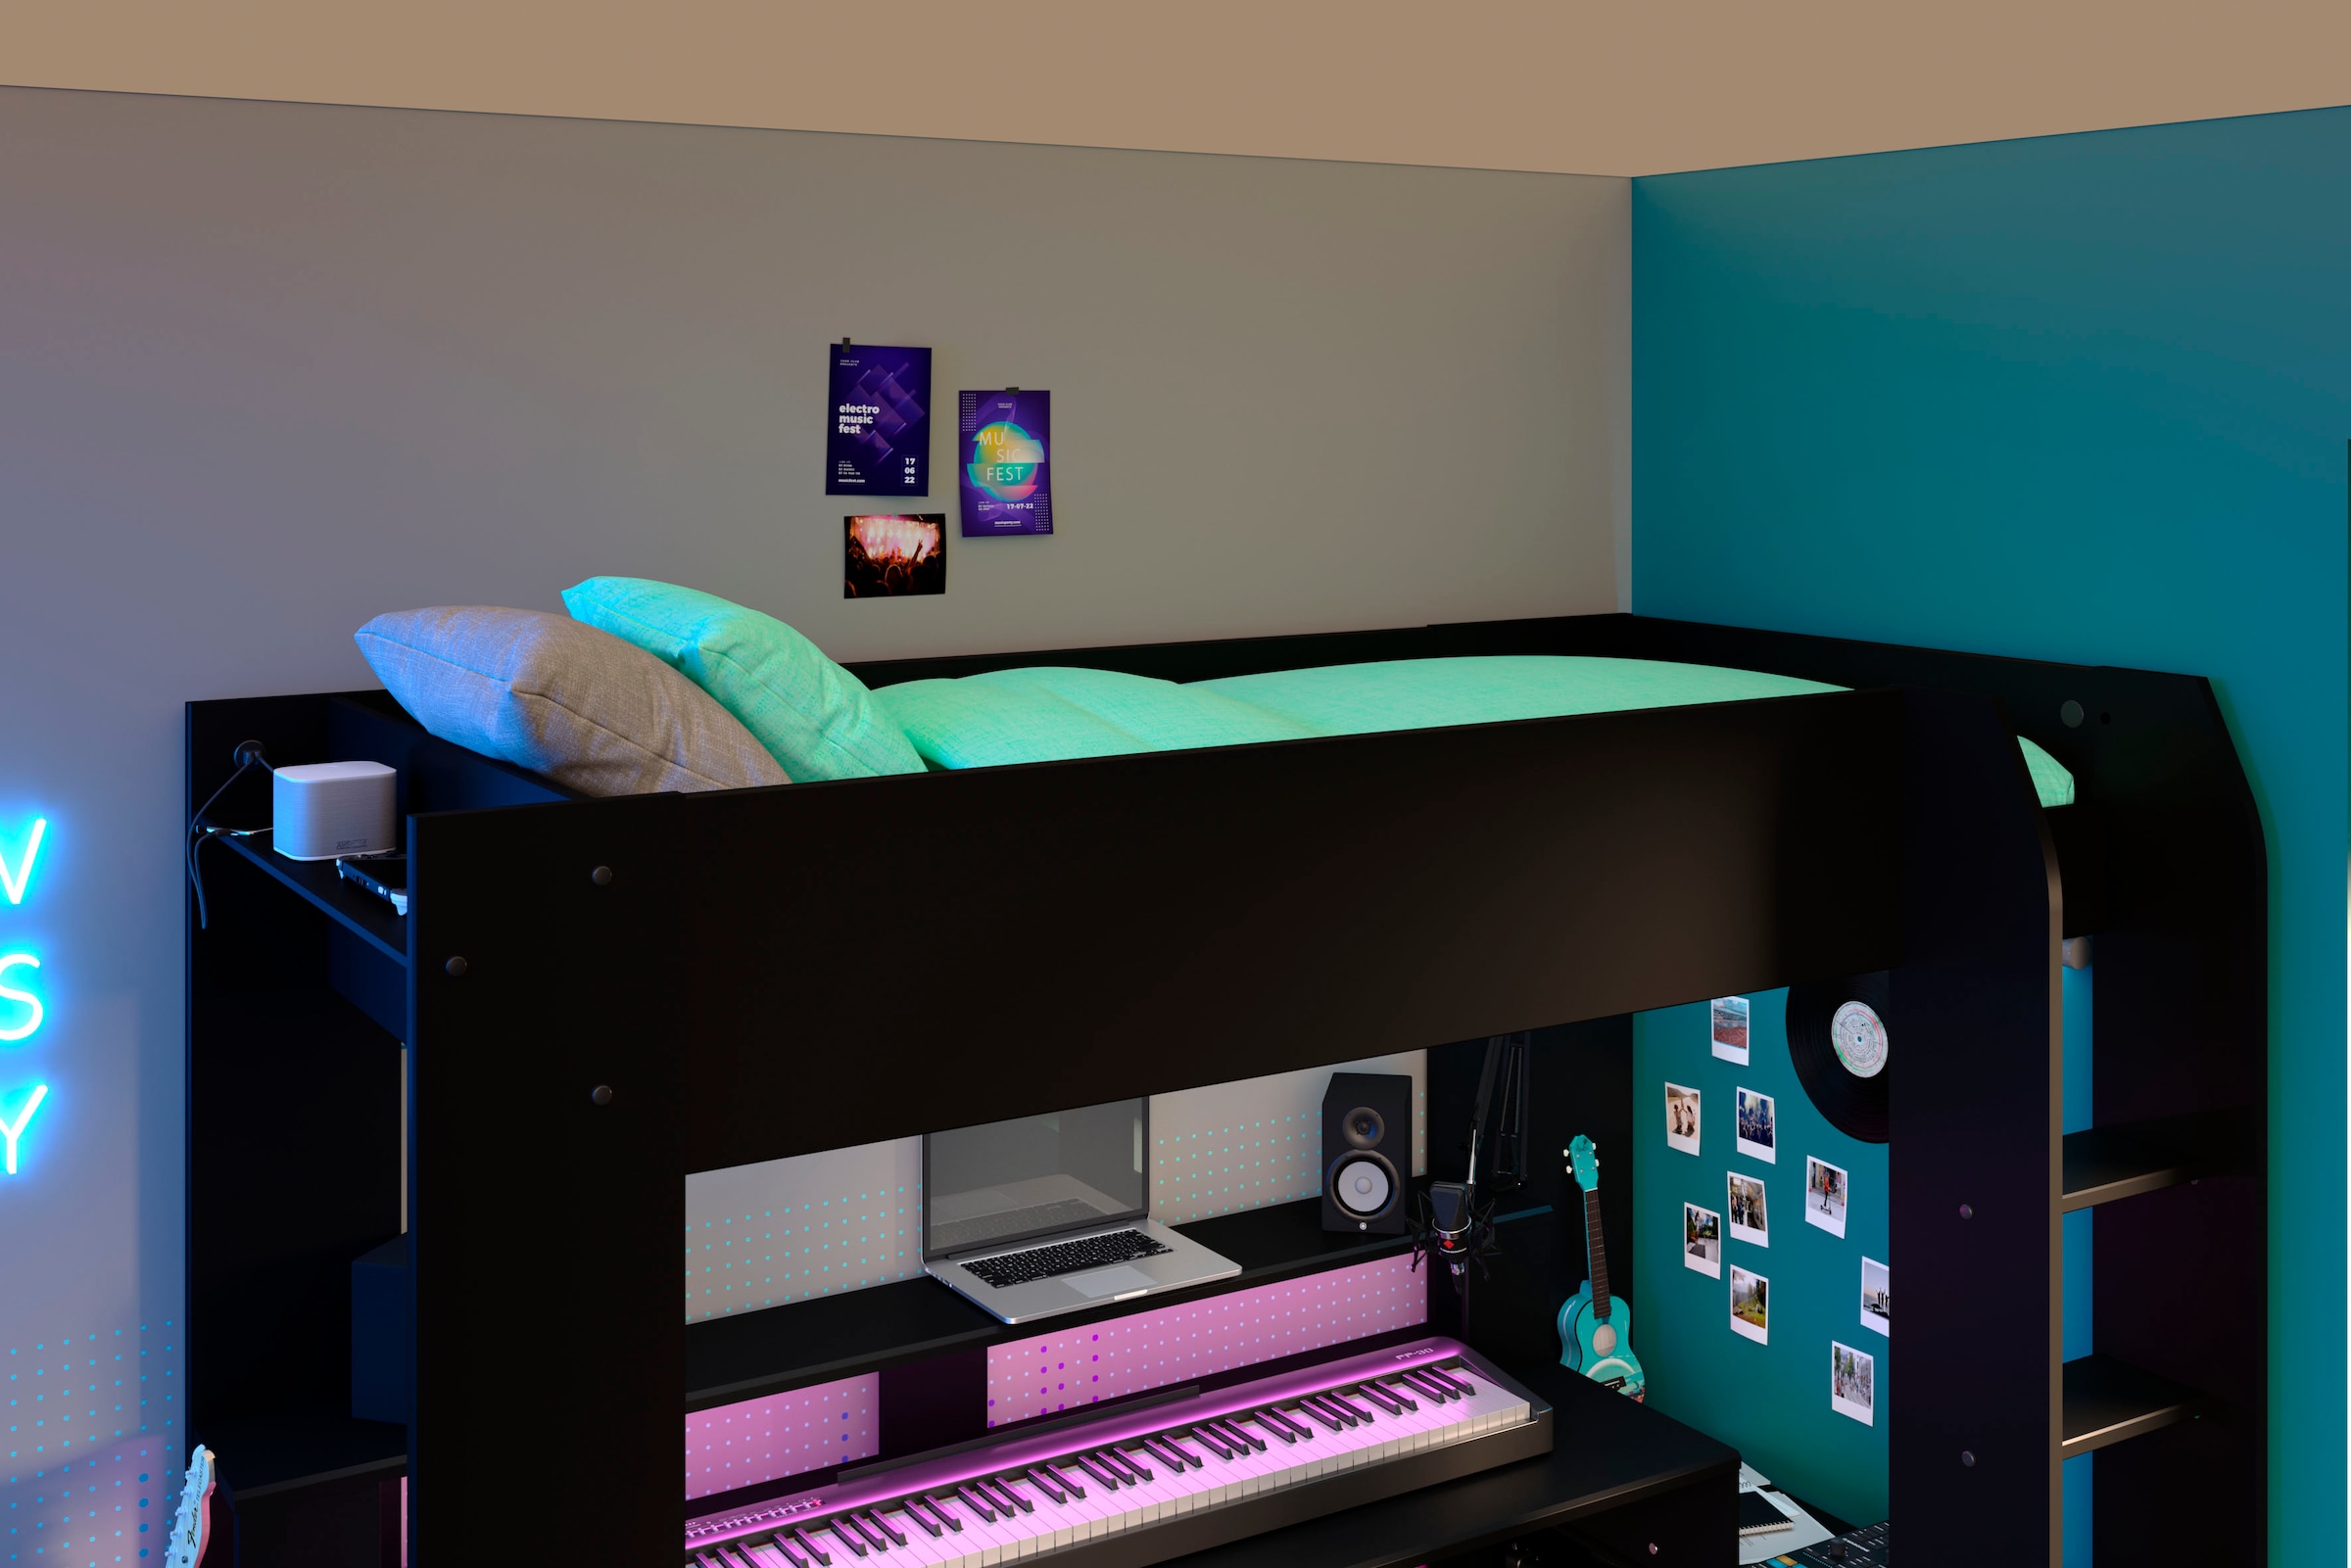 Parisot Hochbett »Gaming-Bett, mit Schreibtisch, USB Anschluss, LED, viel Stauraum«, ideal für kleine Räume, TOPSELLER!